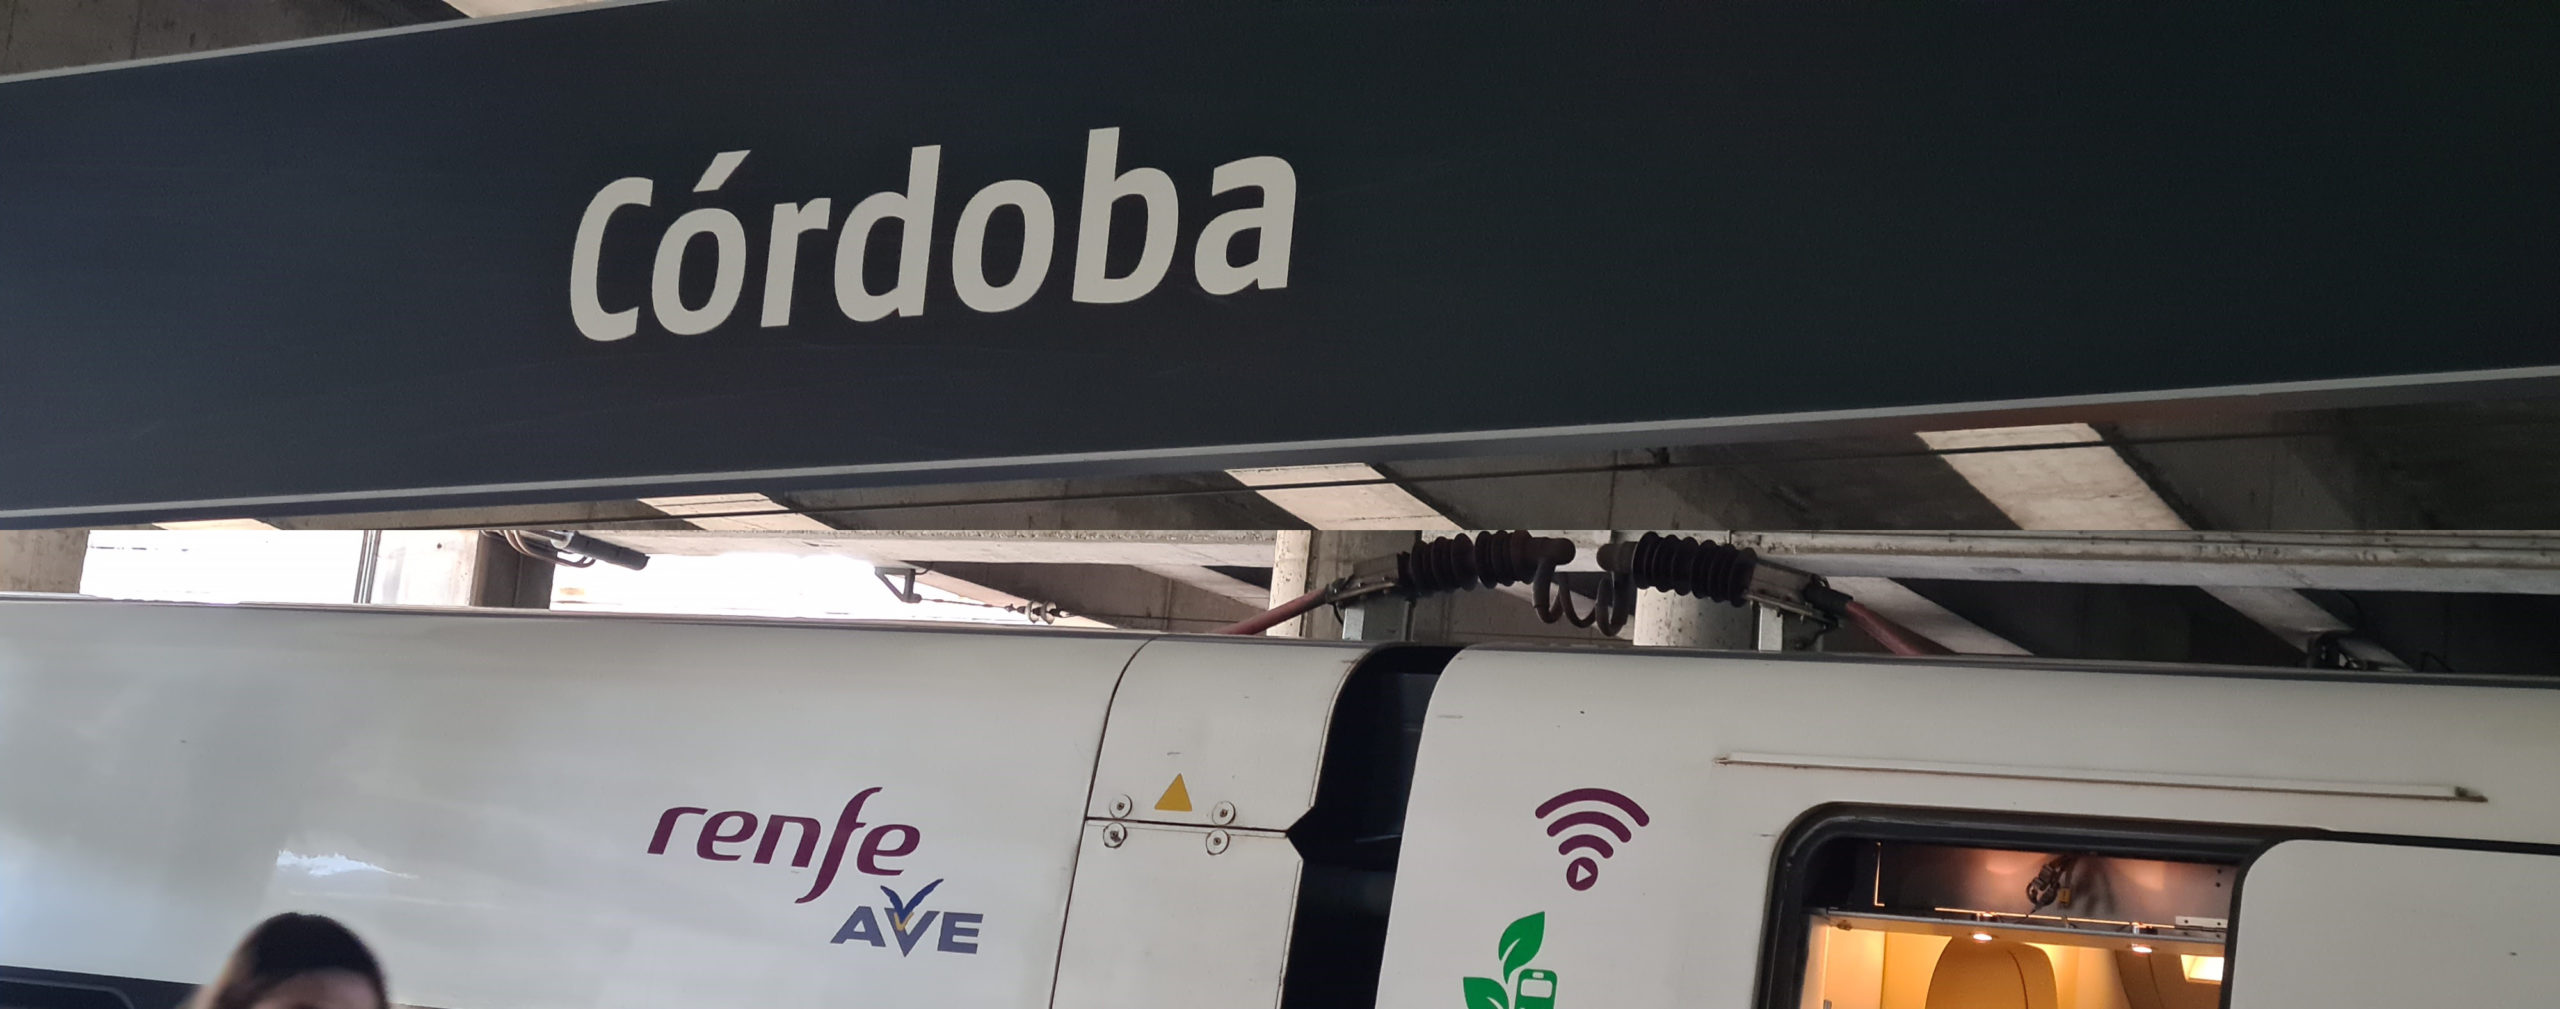 Nuevo servicio en Córdoba.